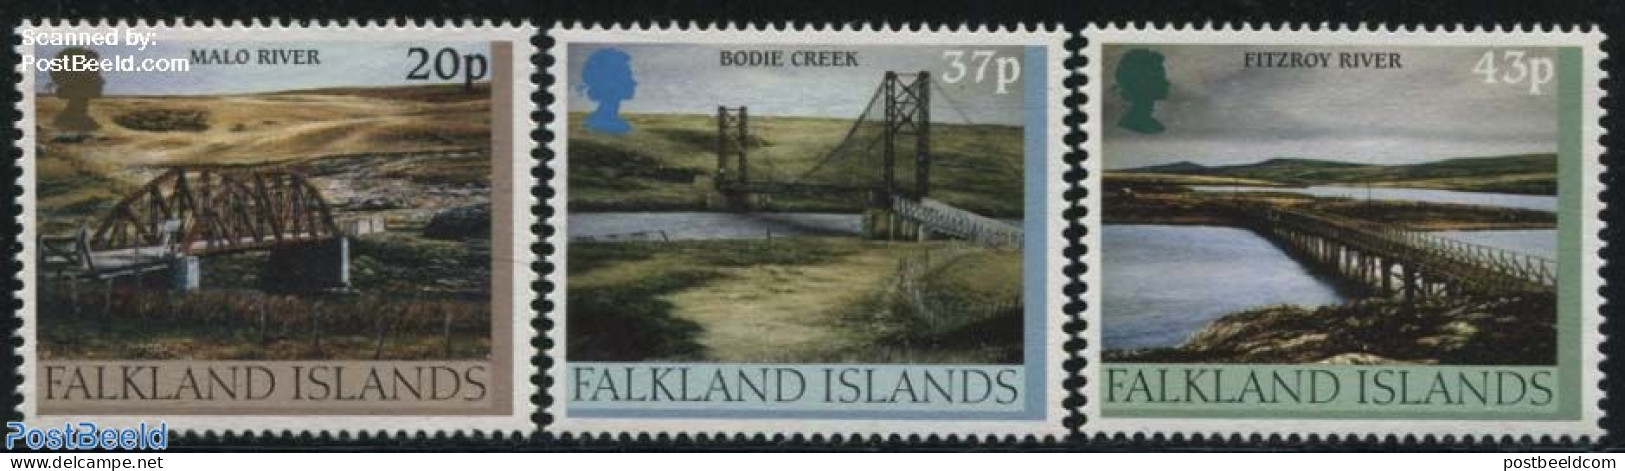 Falkland Islands 2000 Bridges 3v, Mint NH, Art - Bridges And Tunnels - Bruggen